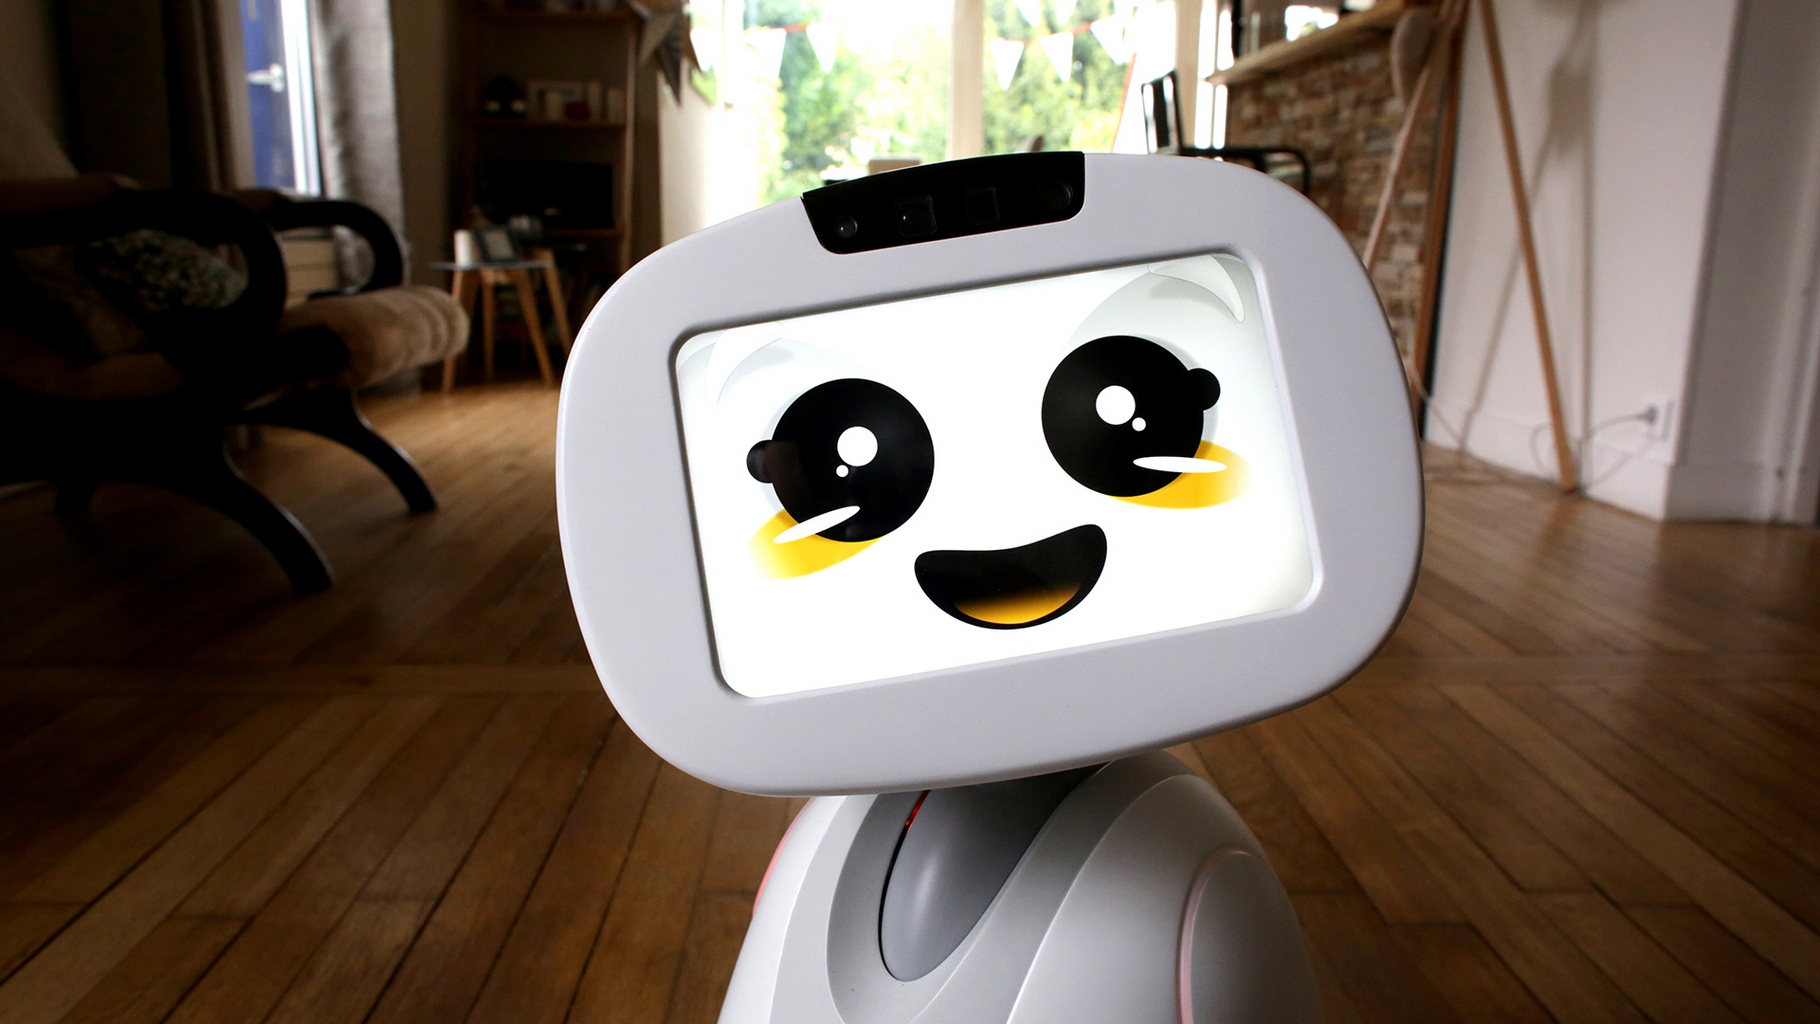 Parmi les attractions du salon Innorobo 2016, Buddy s’est attiré les faveurs du public. Ce sympathique robot créé par une entreprise française sera disponible en fin d’année. © Blue Frog Robotics